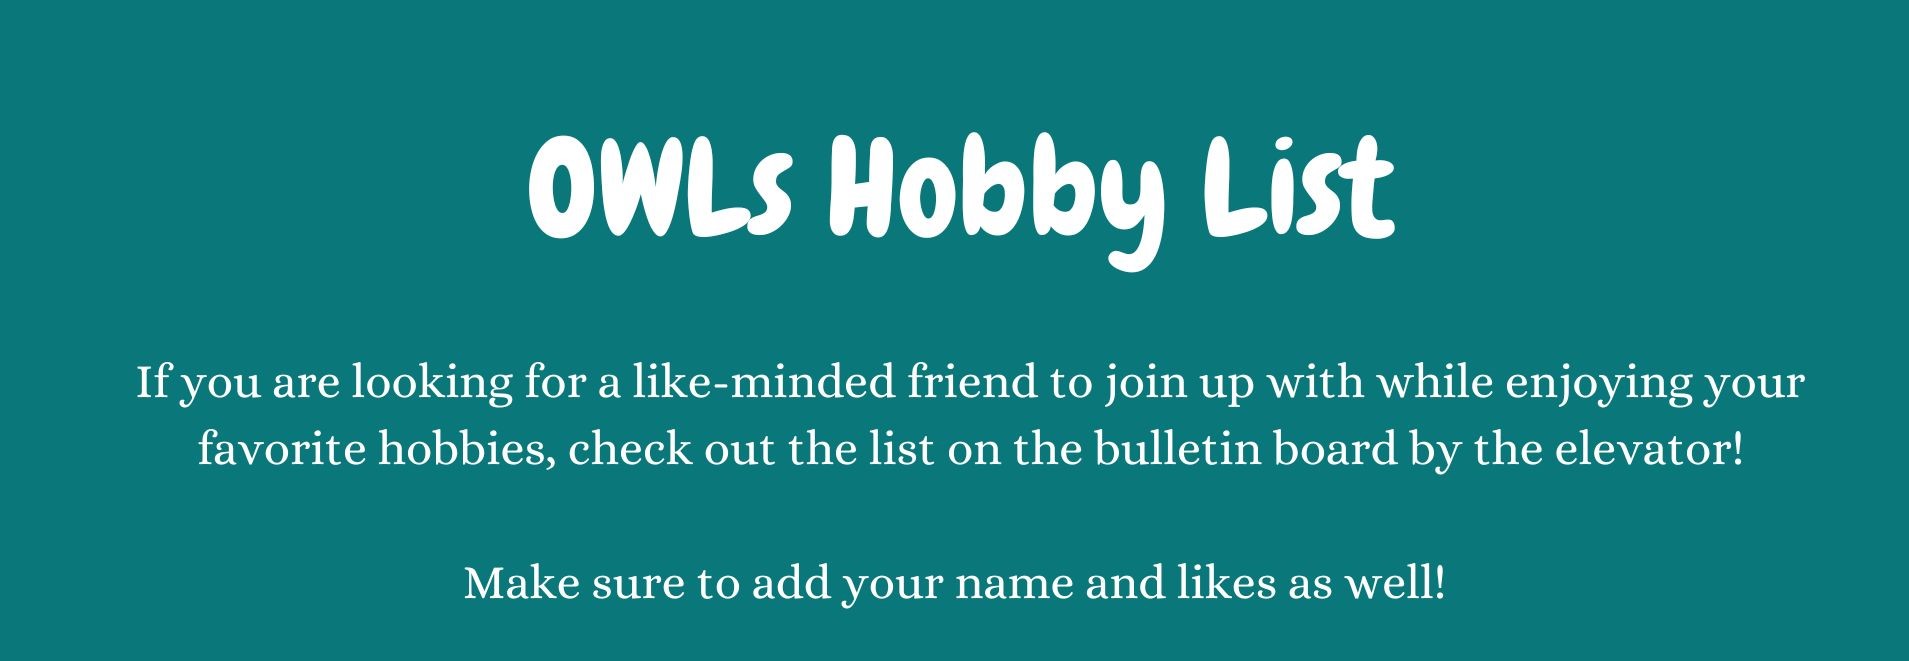 OWLs Hobby List 2